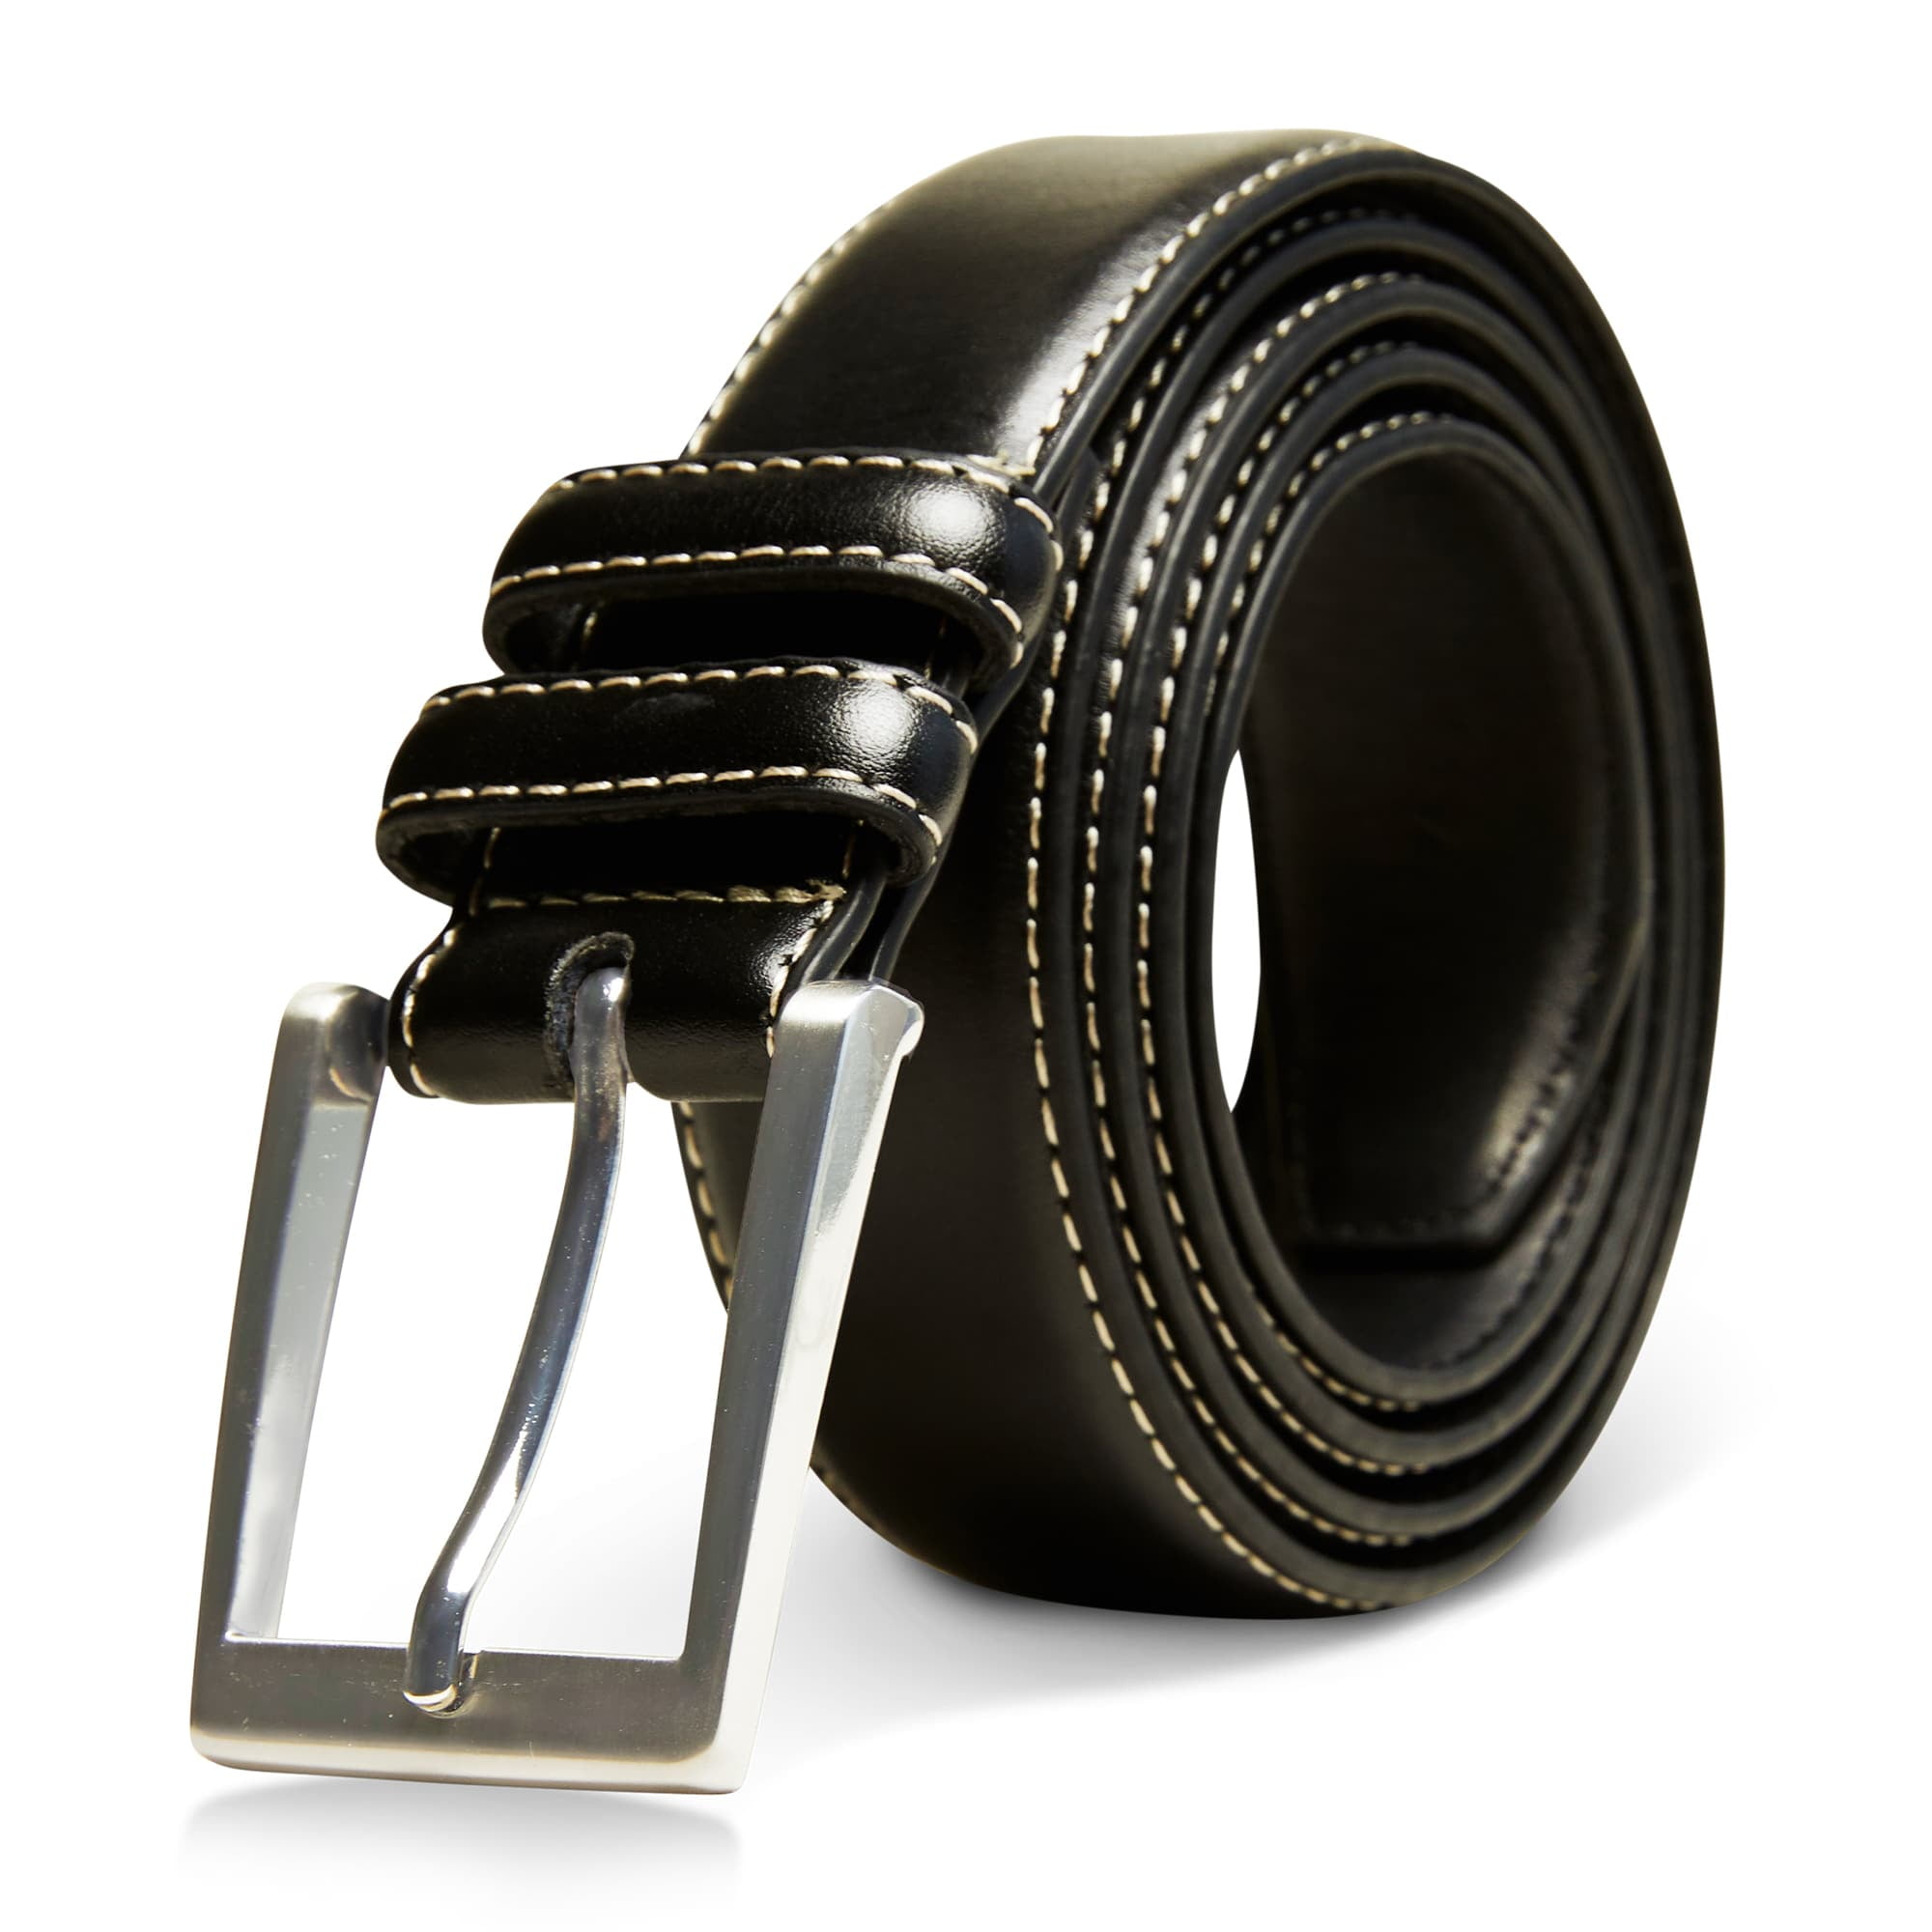 access-denied-genuine-leather-belt-for-men-casual-belt-dress-belts-mens-belt-for-business